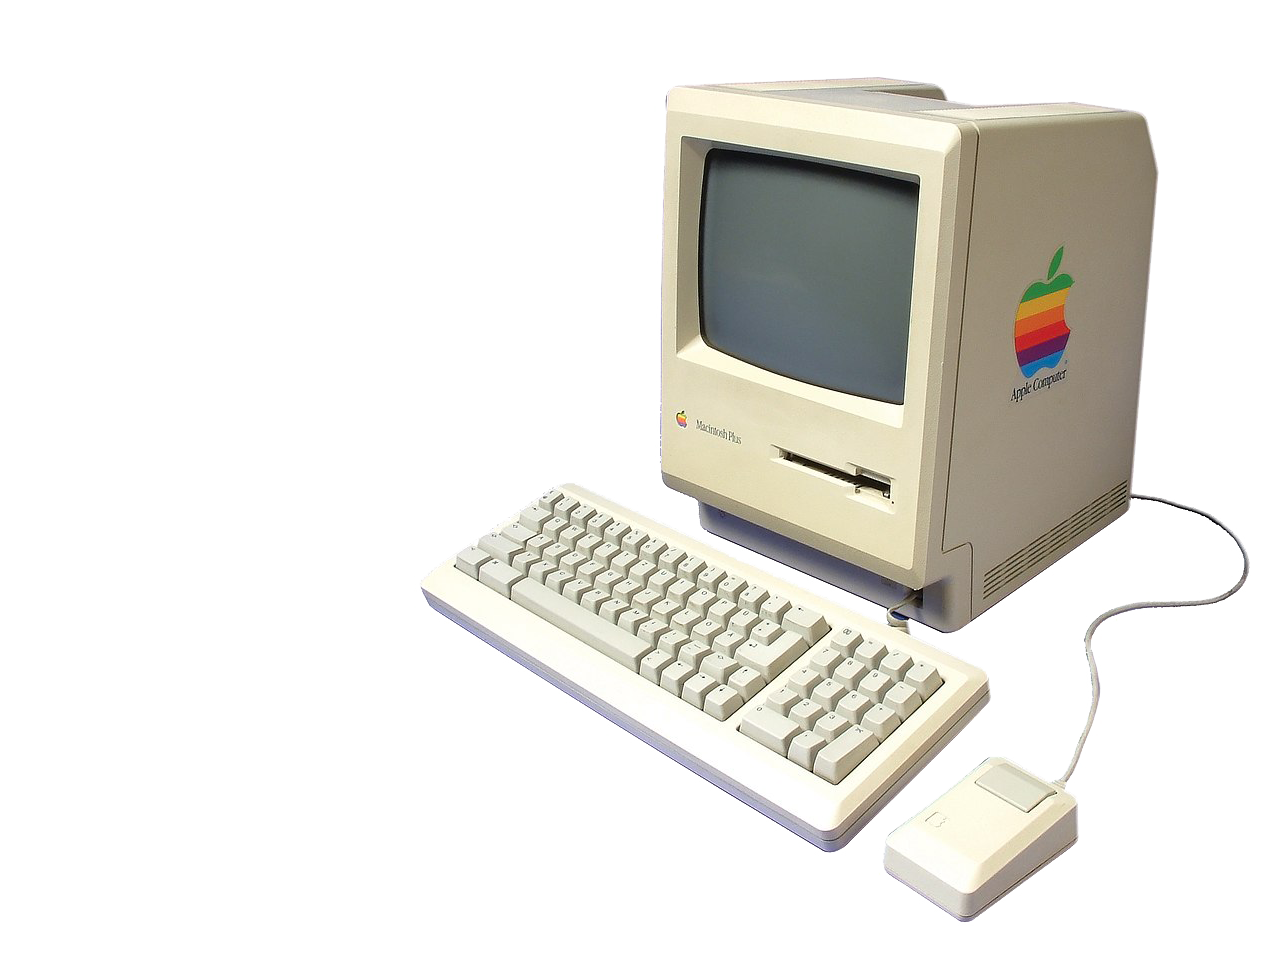 Der Macintosh 128 war der erste Computer von Apple mit einer grafischen Benutzeroberfläche.